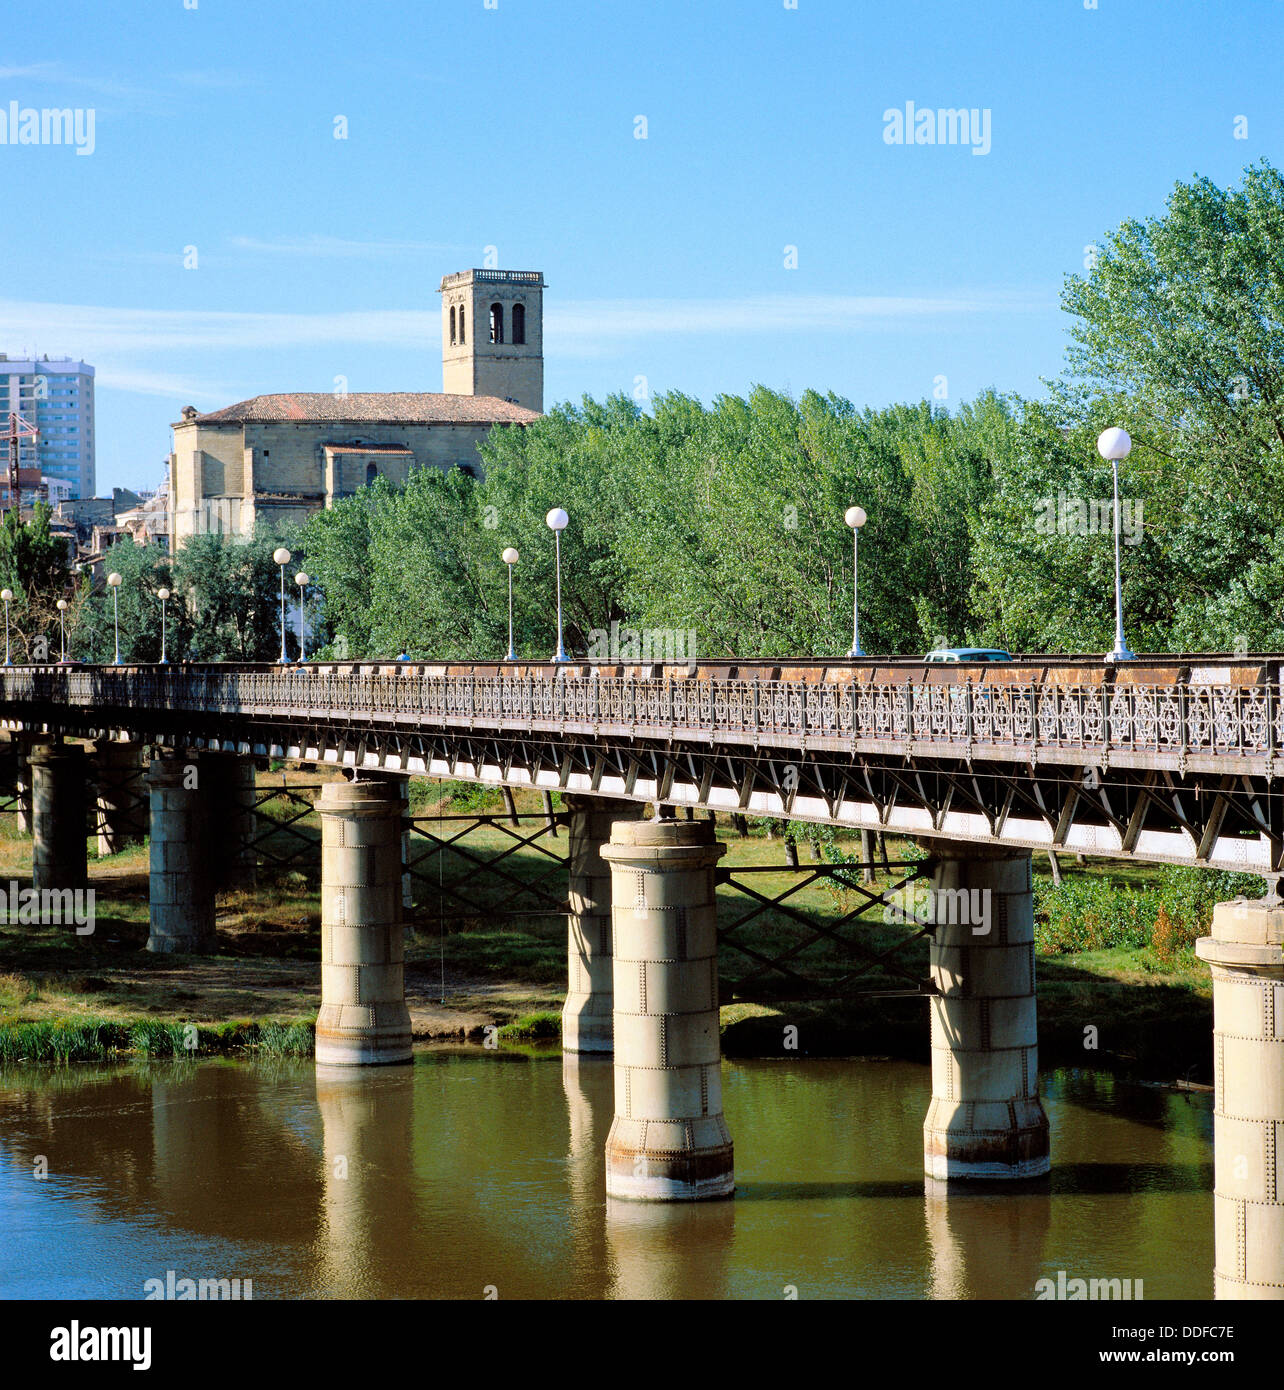 márketing provocar adyacente Puente de Hierro sobre el río Ebro, Logroño. La Rioja, España Fotografía de  stock - Alamy